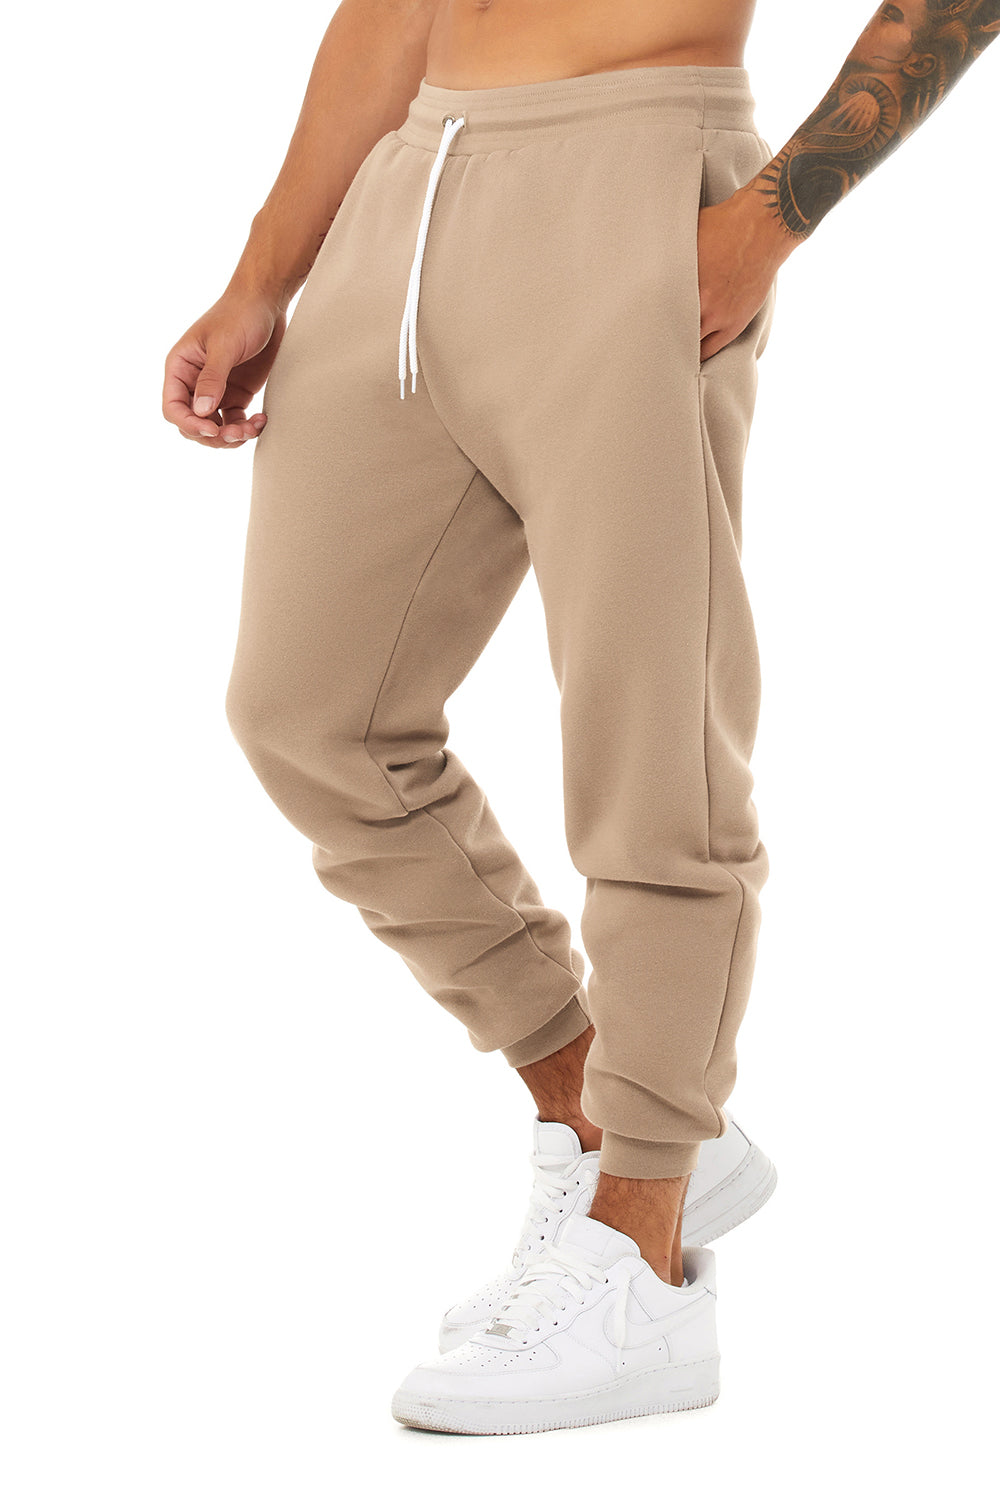 Bella + Canvas BC3727 Mens Jogger Sweatpants w/ Pockets Tan Model 3Q